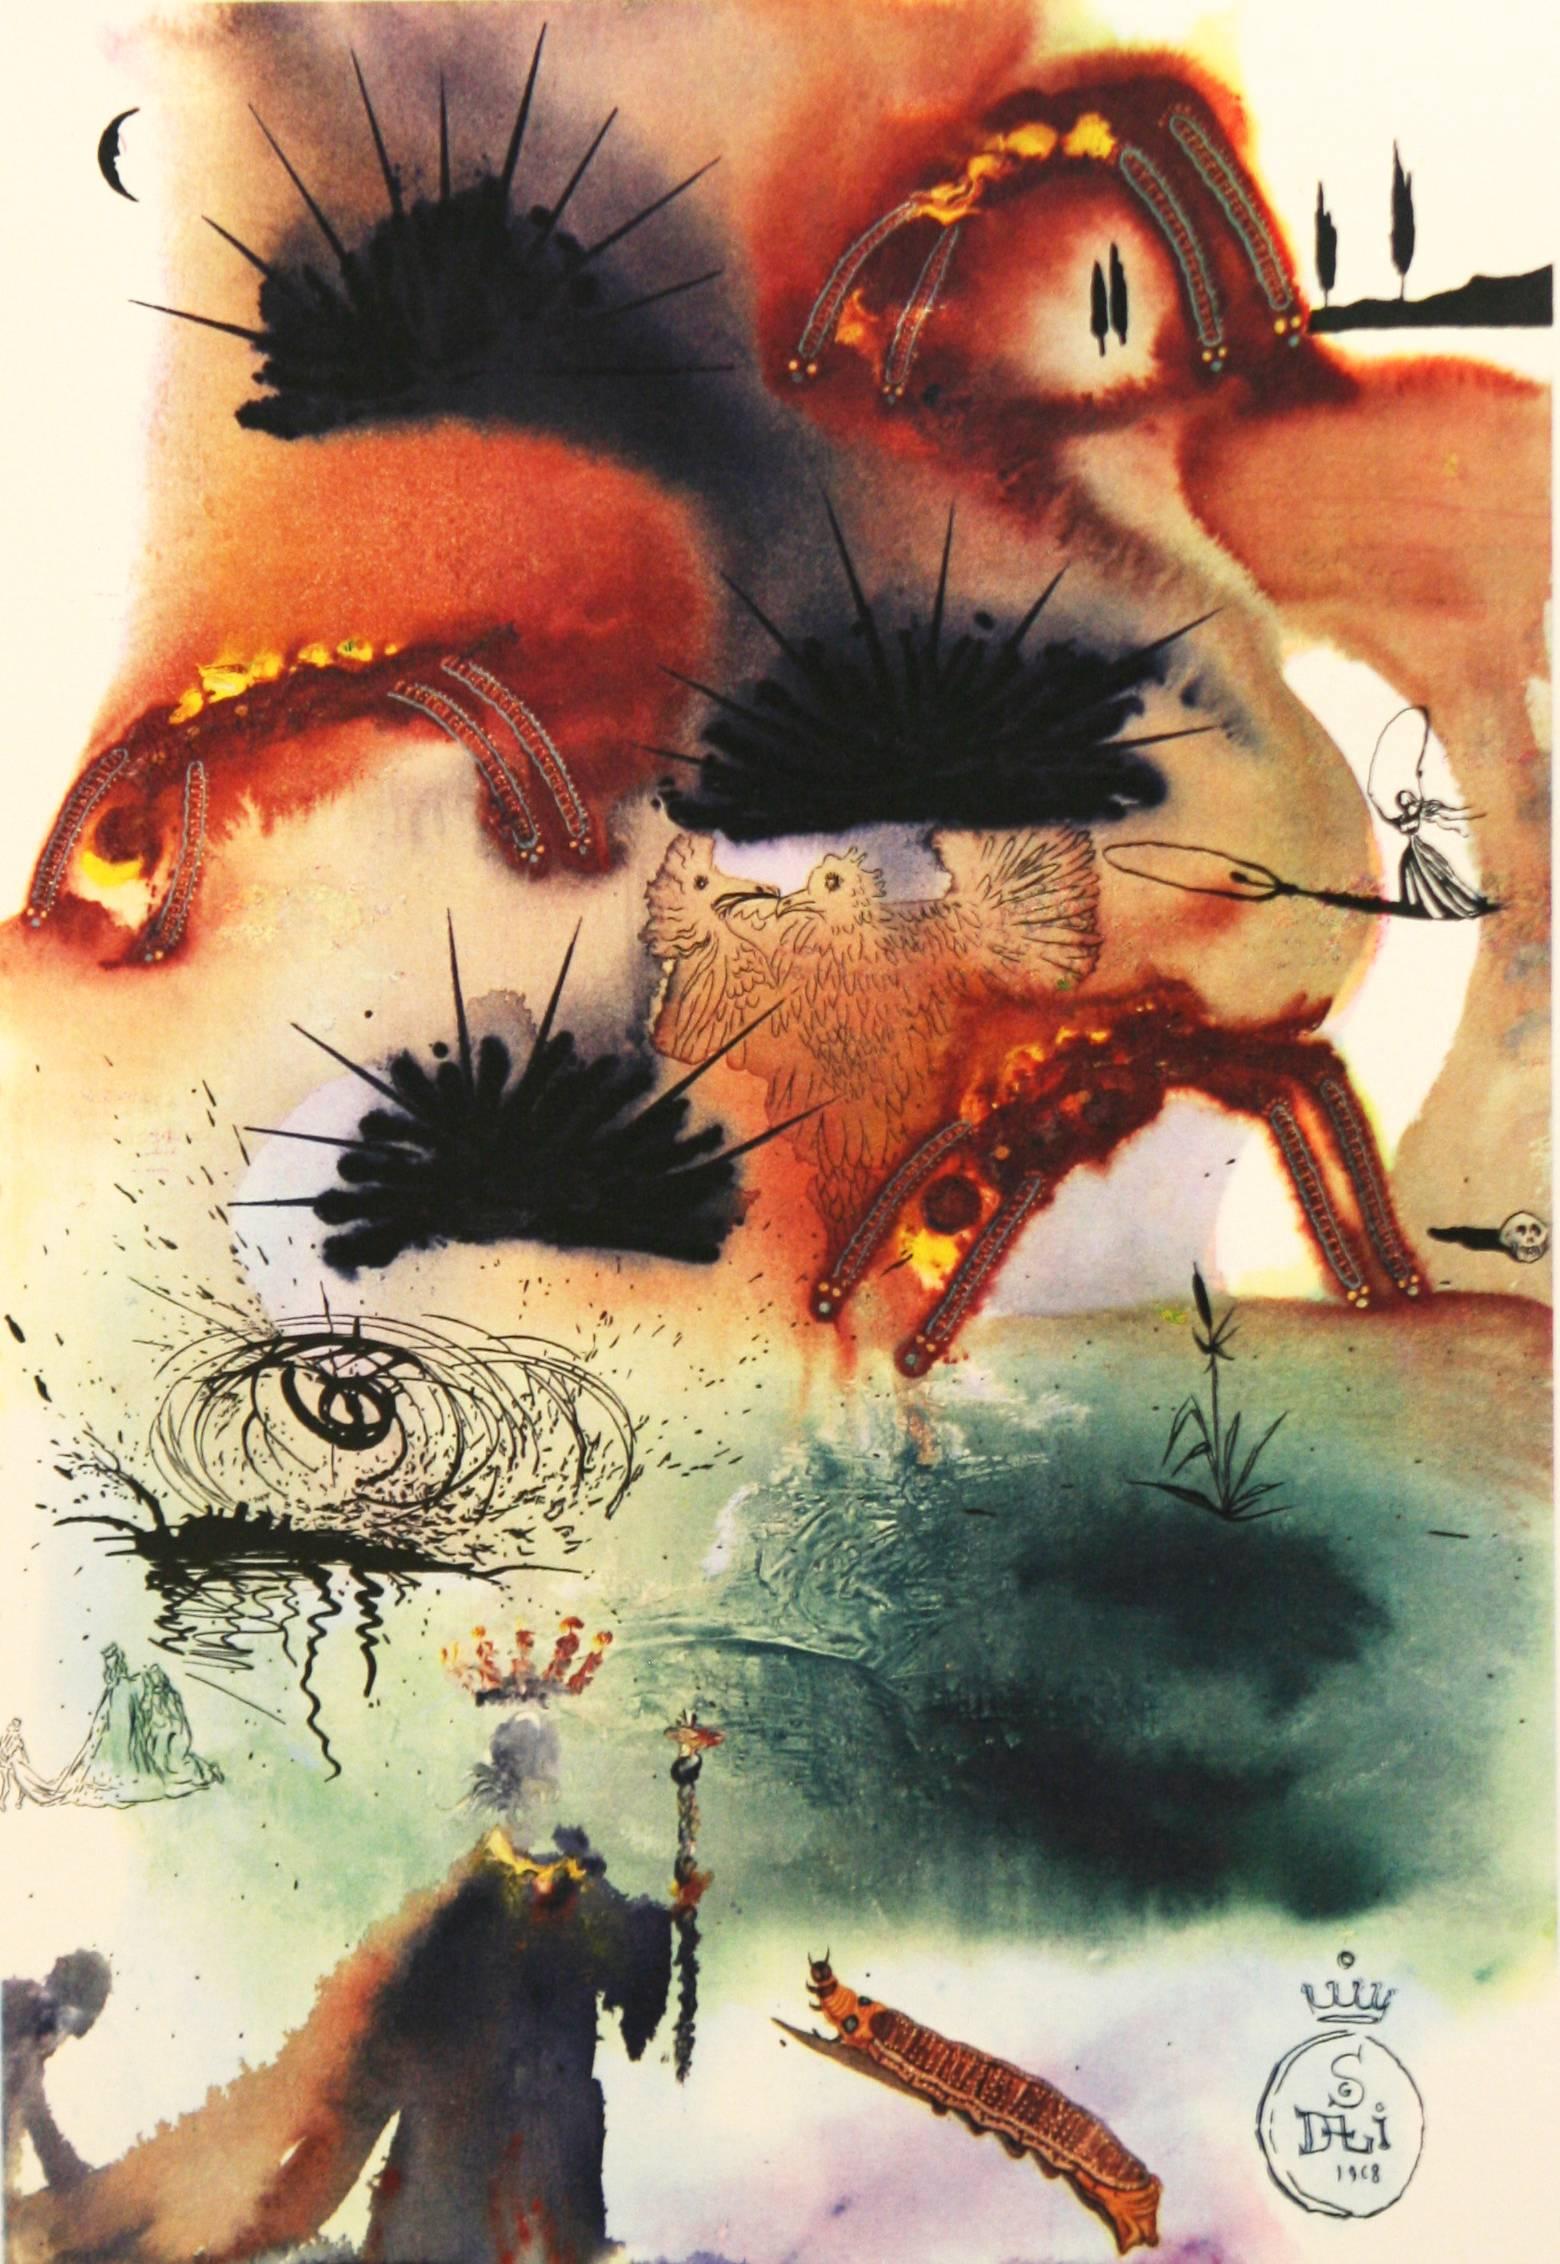 The Lobster Quadrille Salvador Dali Alice in Wonderland Random House 1969 - Print by Salvador Dalí